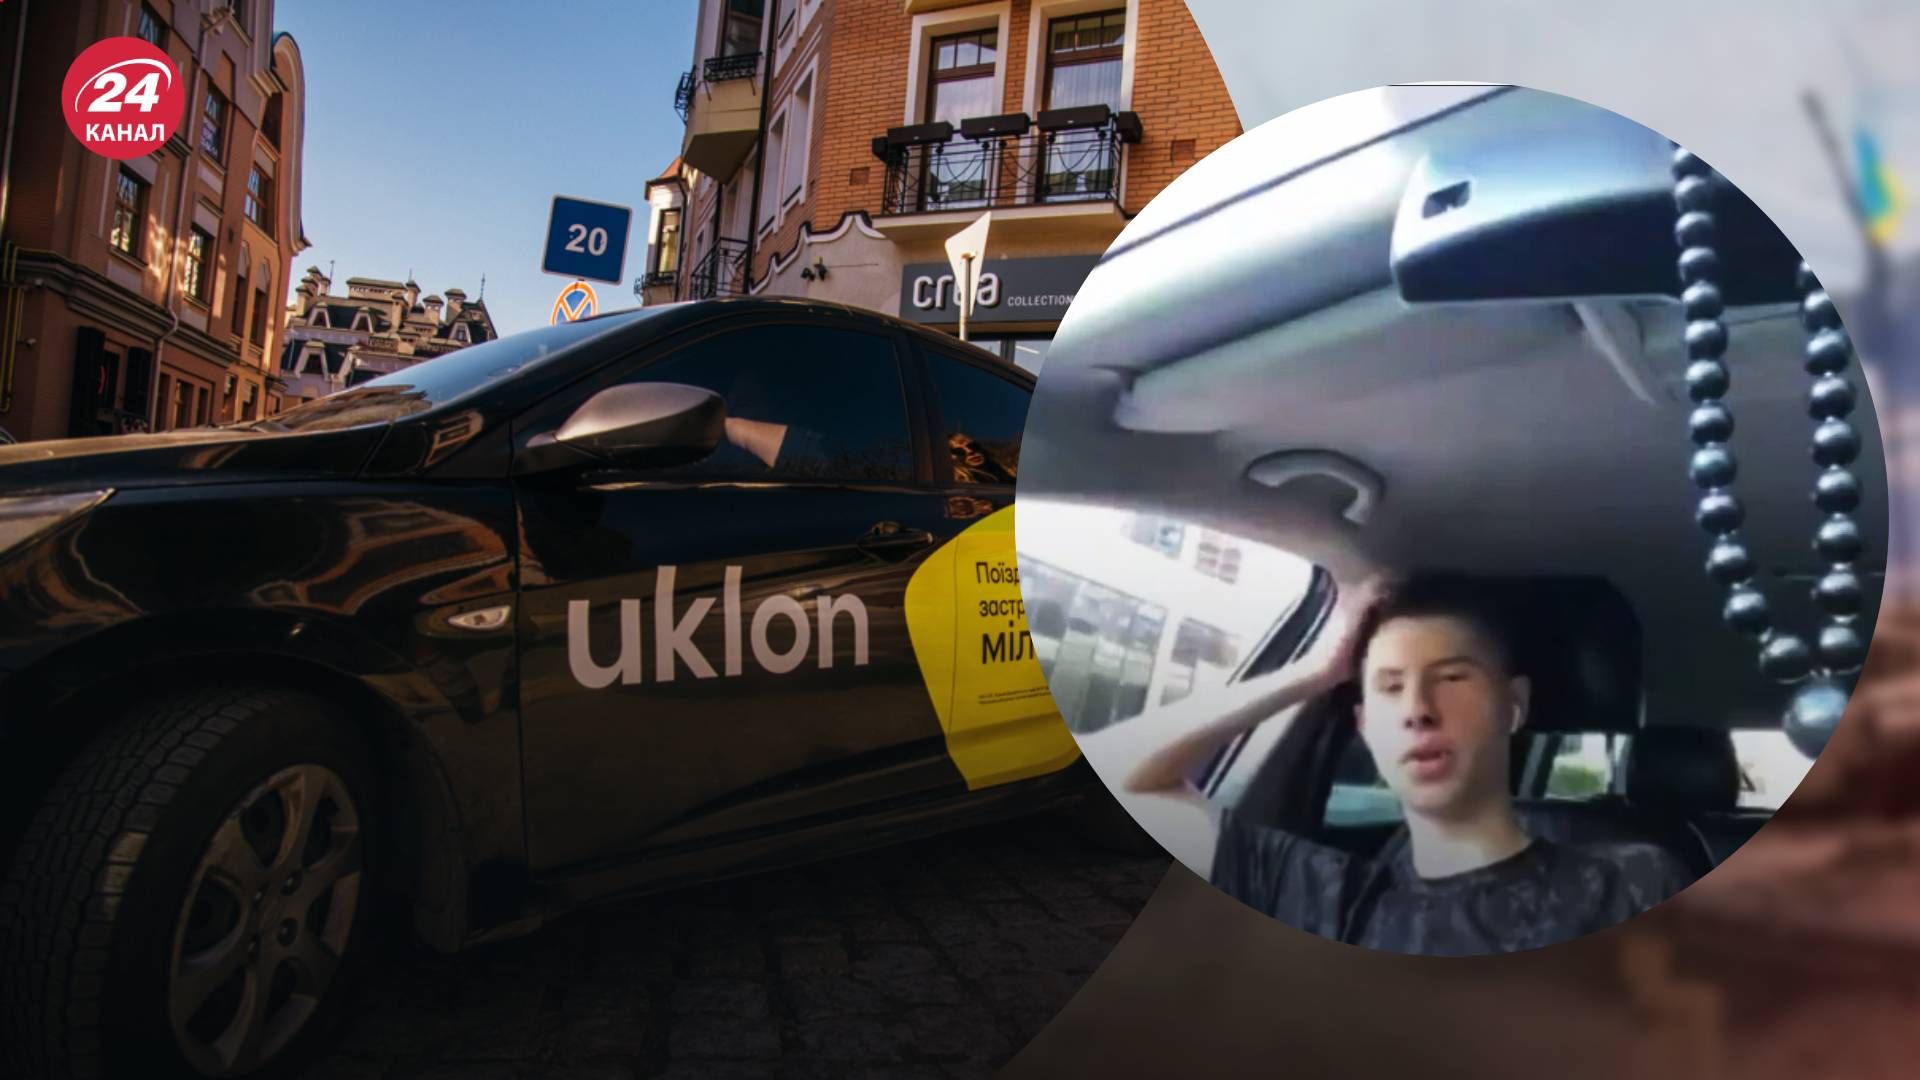 Таксист Uklon у Києві втрапив у скандал